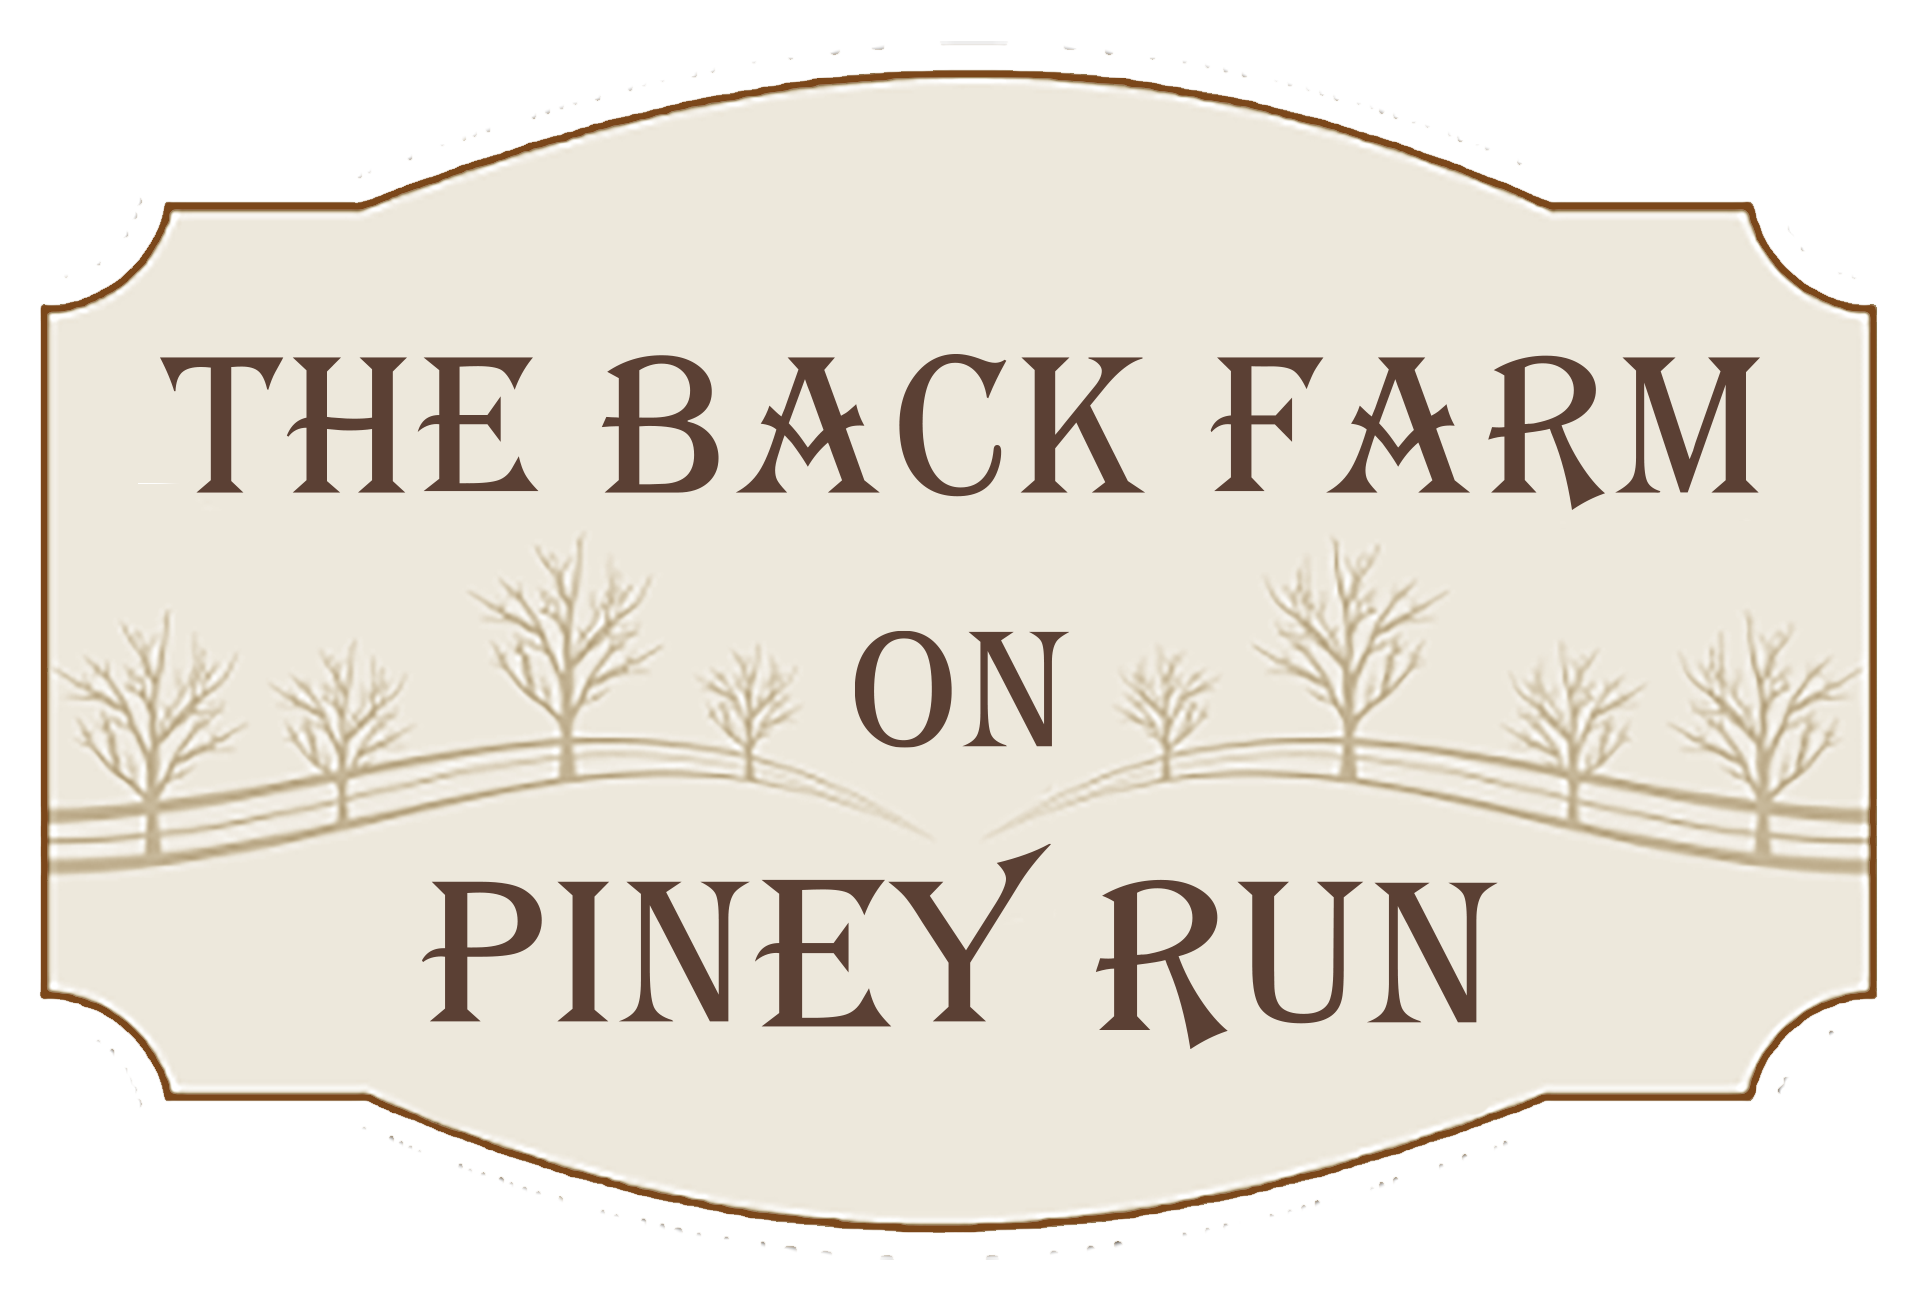 The Back Farm on Piney Run